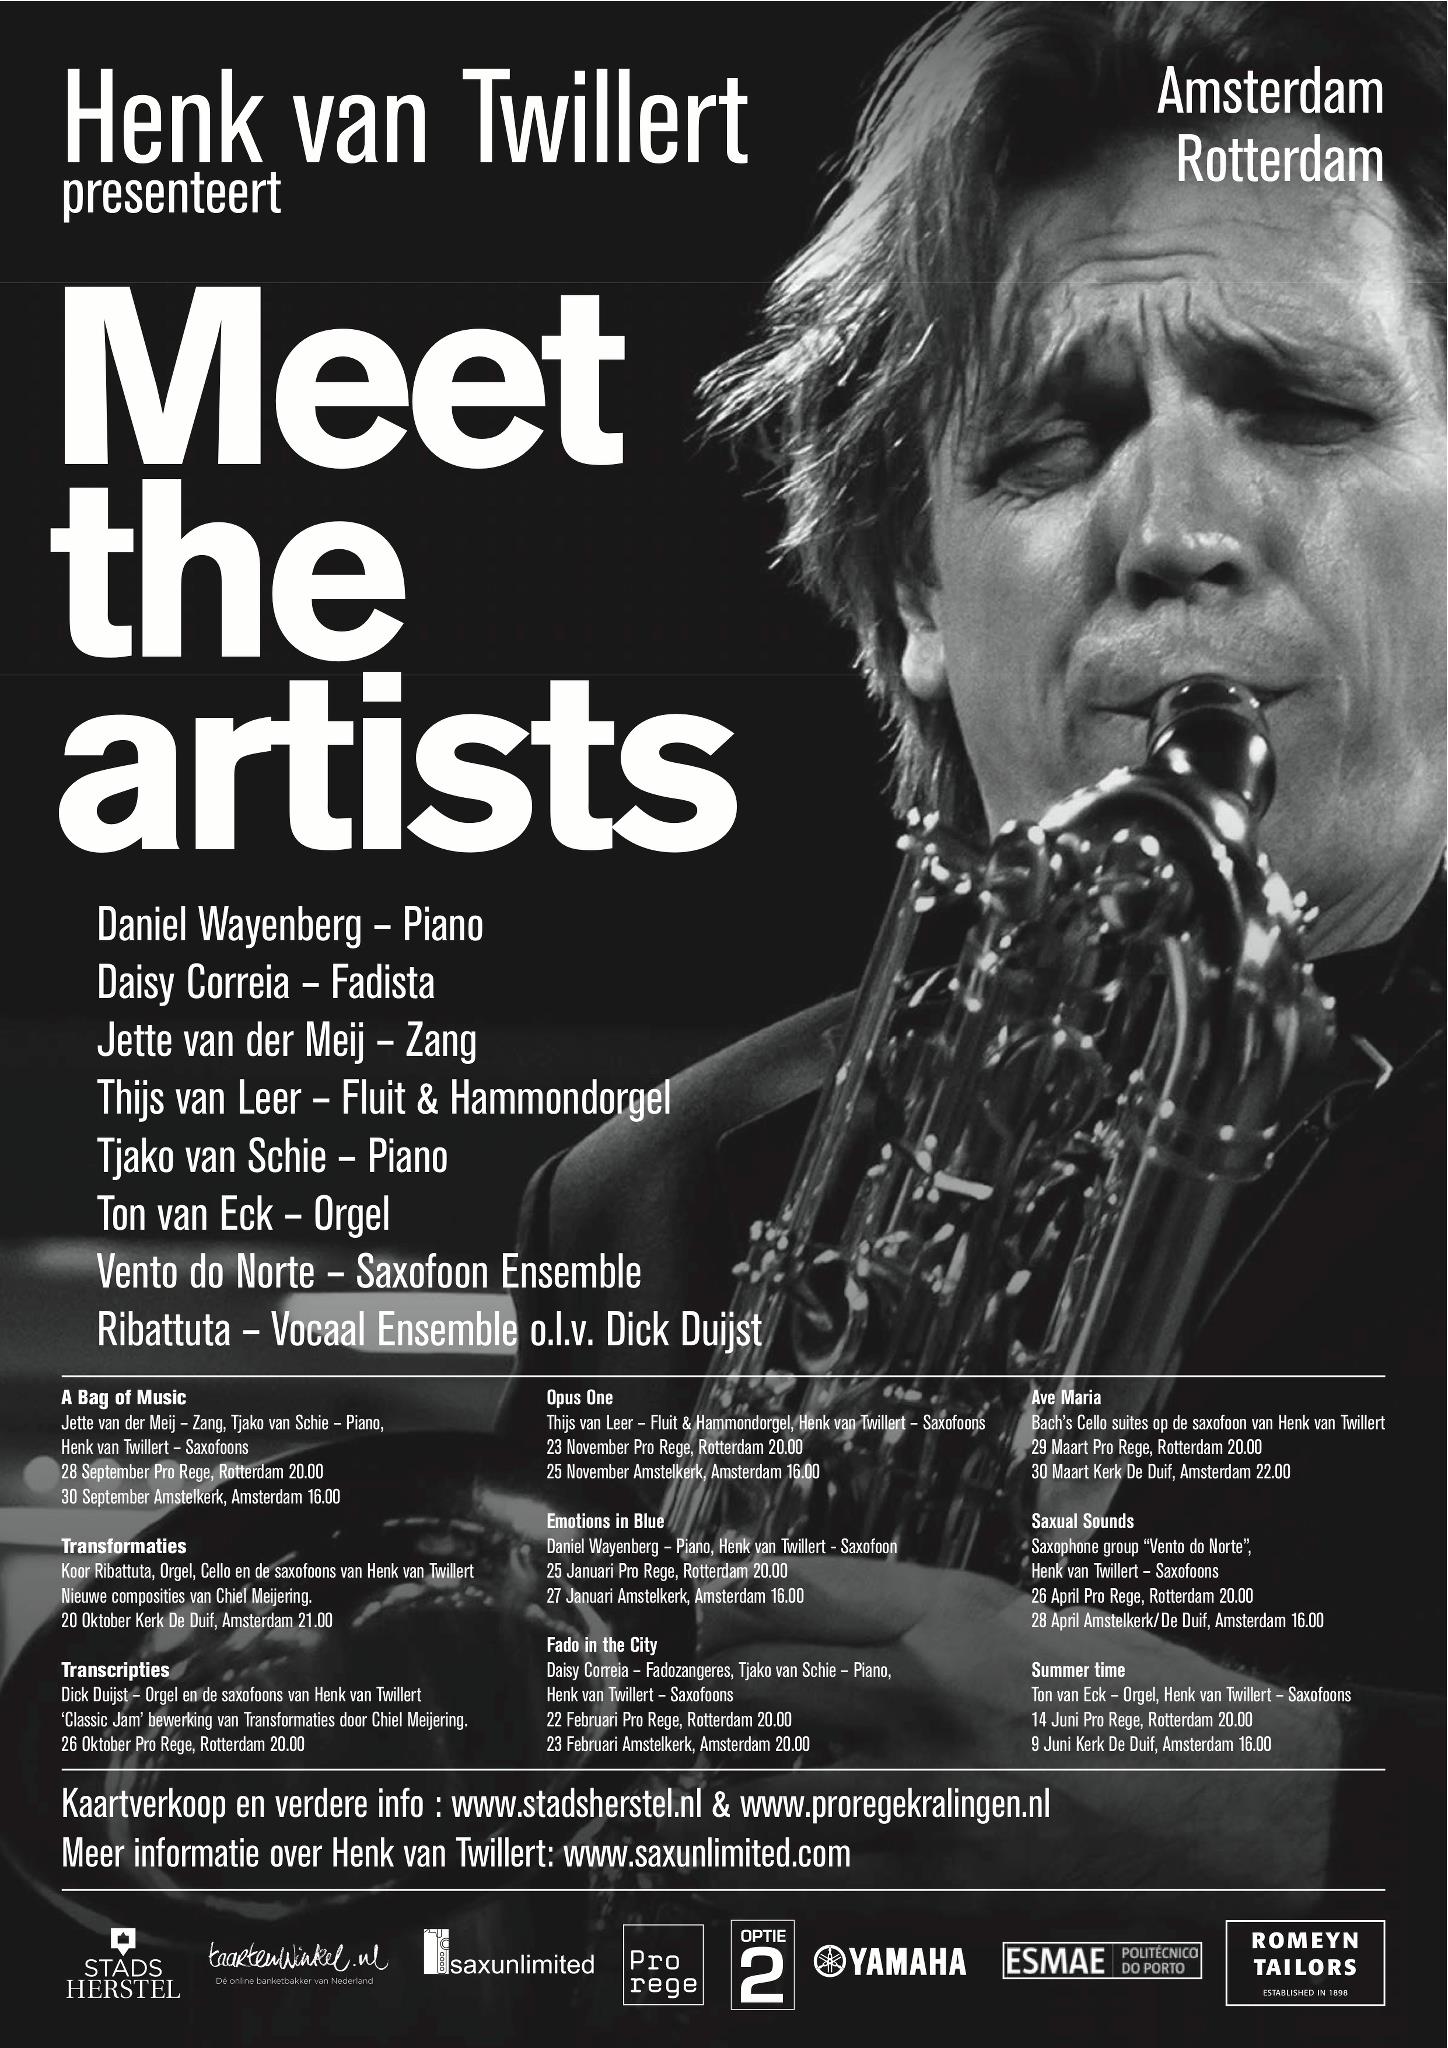 Henk van Twillert, saxofoon, Jette van der Meij, zang, Tjako van Schie, piano MEET THE ARTISTS